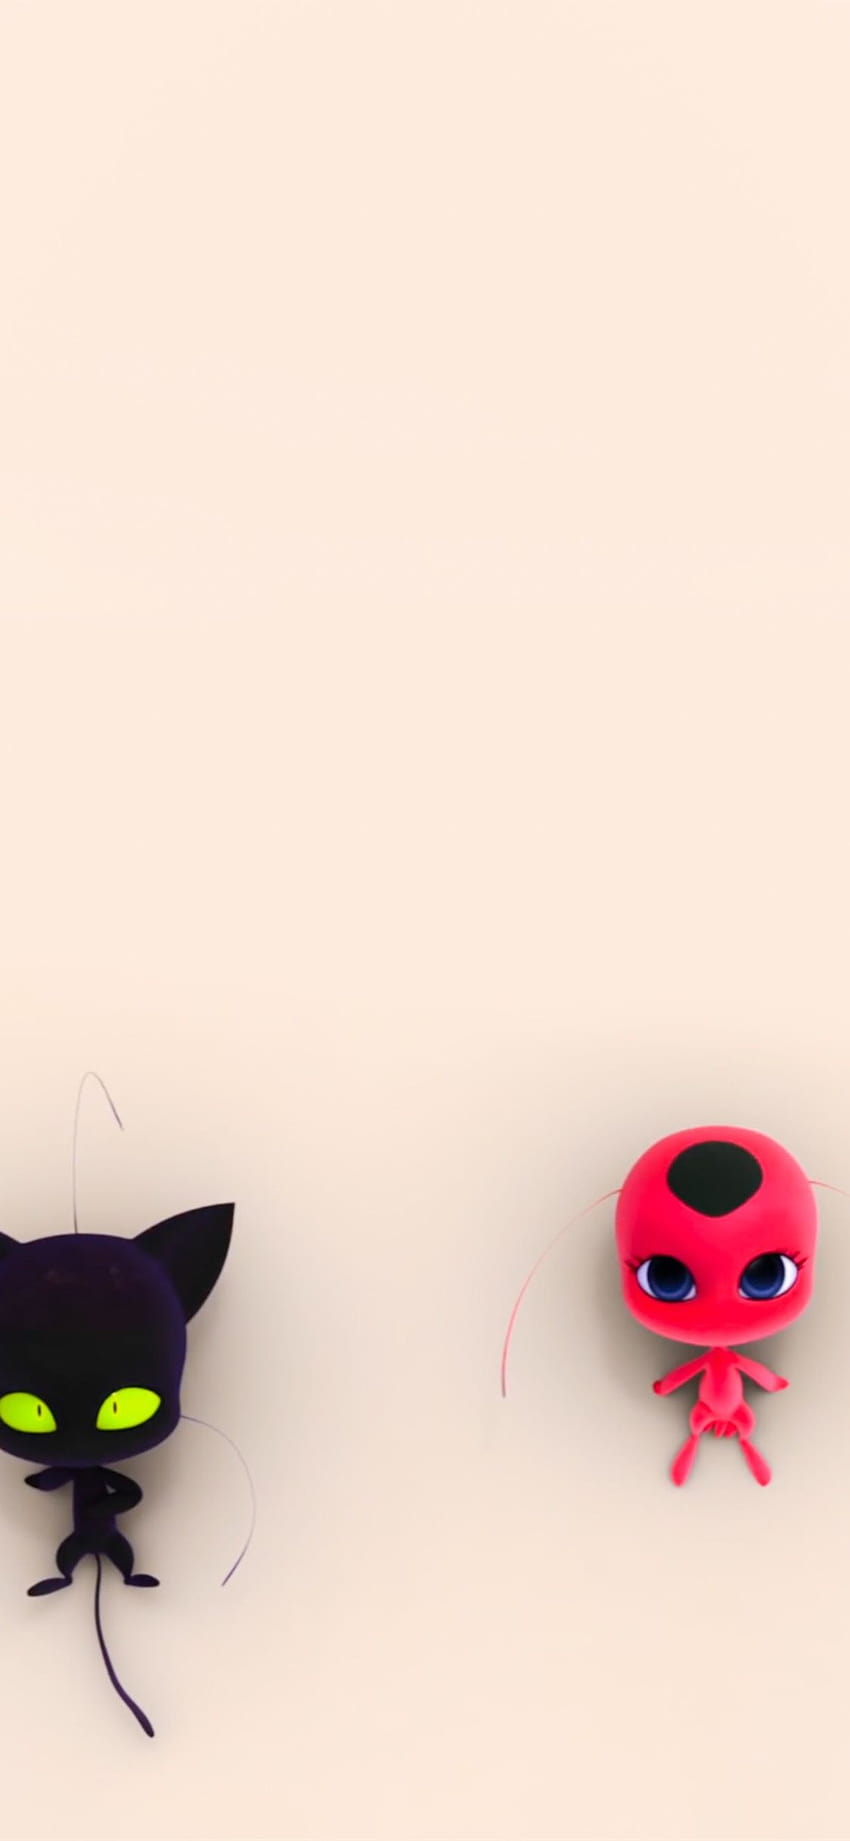 cuentos milagrosos de ladybug cat noir iPhone, teléfono de ladybug milagrosa fondo de pantalla del teléfono